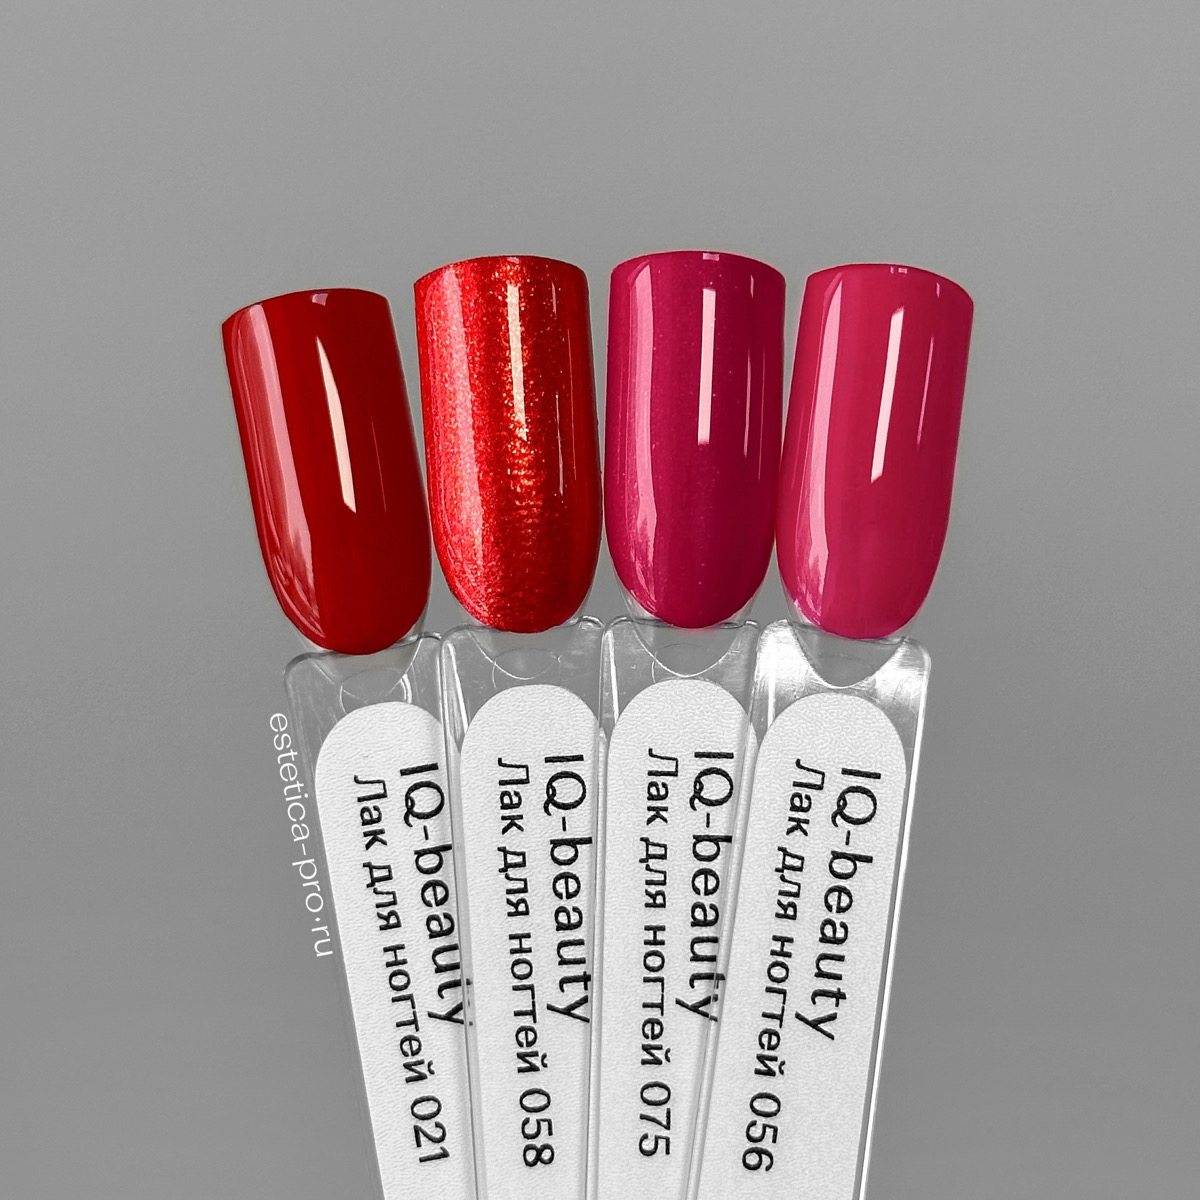 Лак для ногтей IQ Beauty 021(Like red lipstick) PROLAC+bioceramics, 12,5 мл.